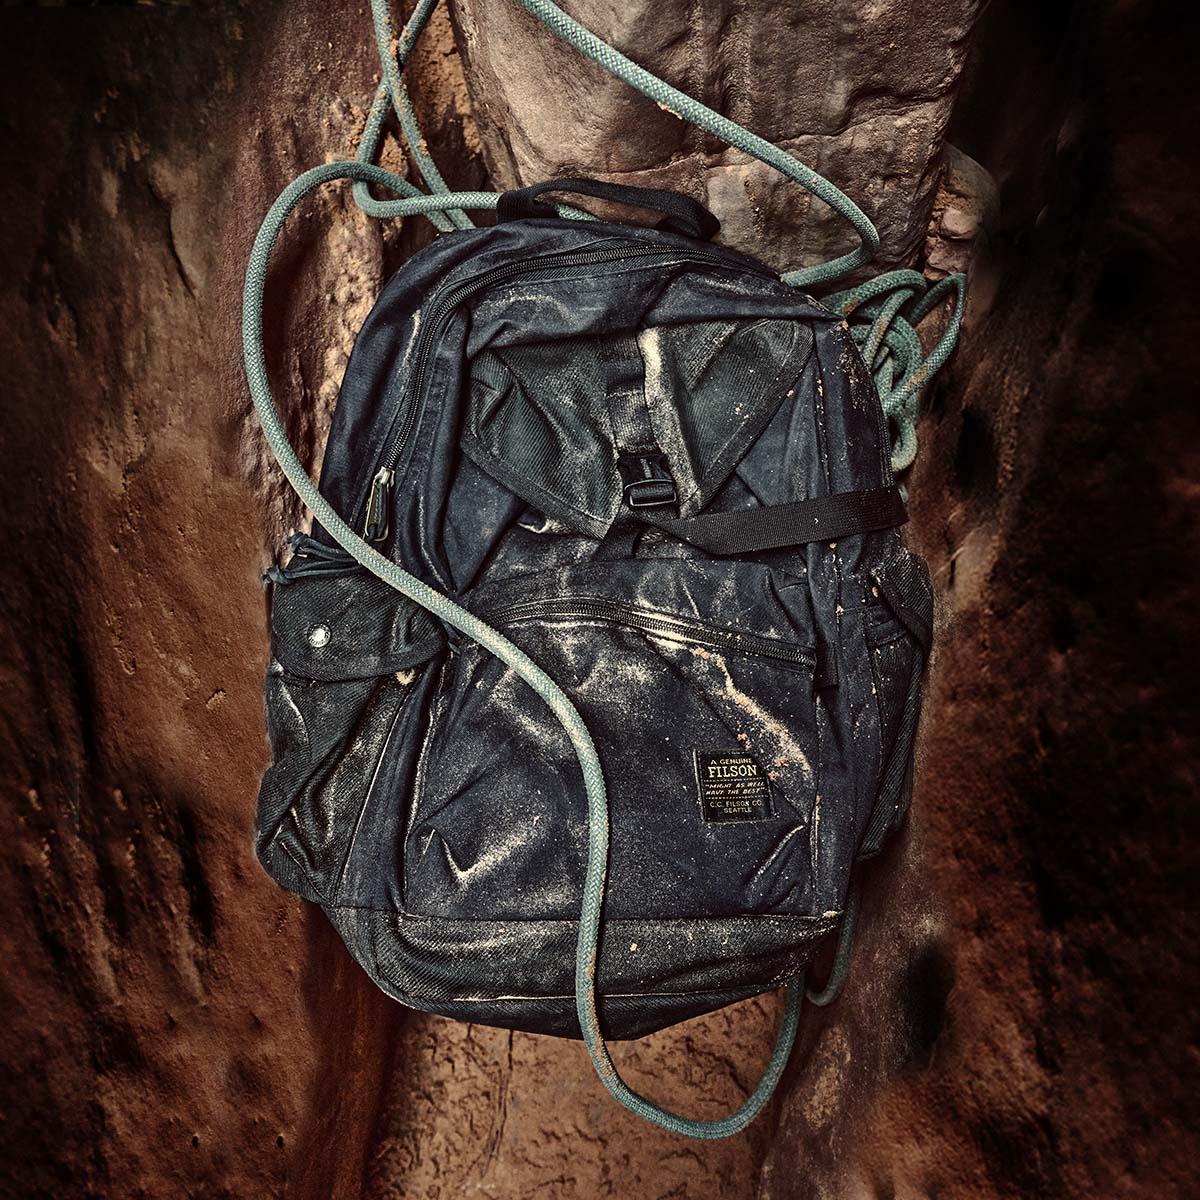 Filson Surveyor 36L Backpack Black, strapazierfähiger und vielseitiger Rucksack, der einer intensiven Nutzung standhält